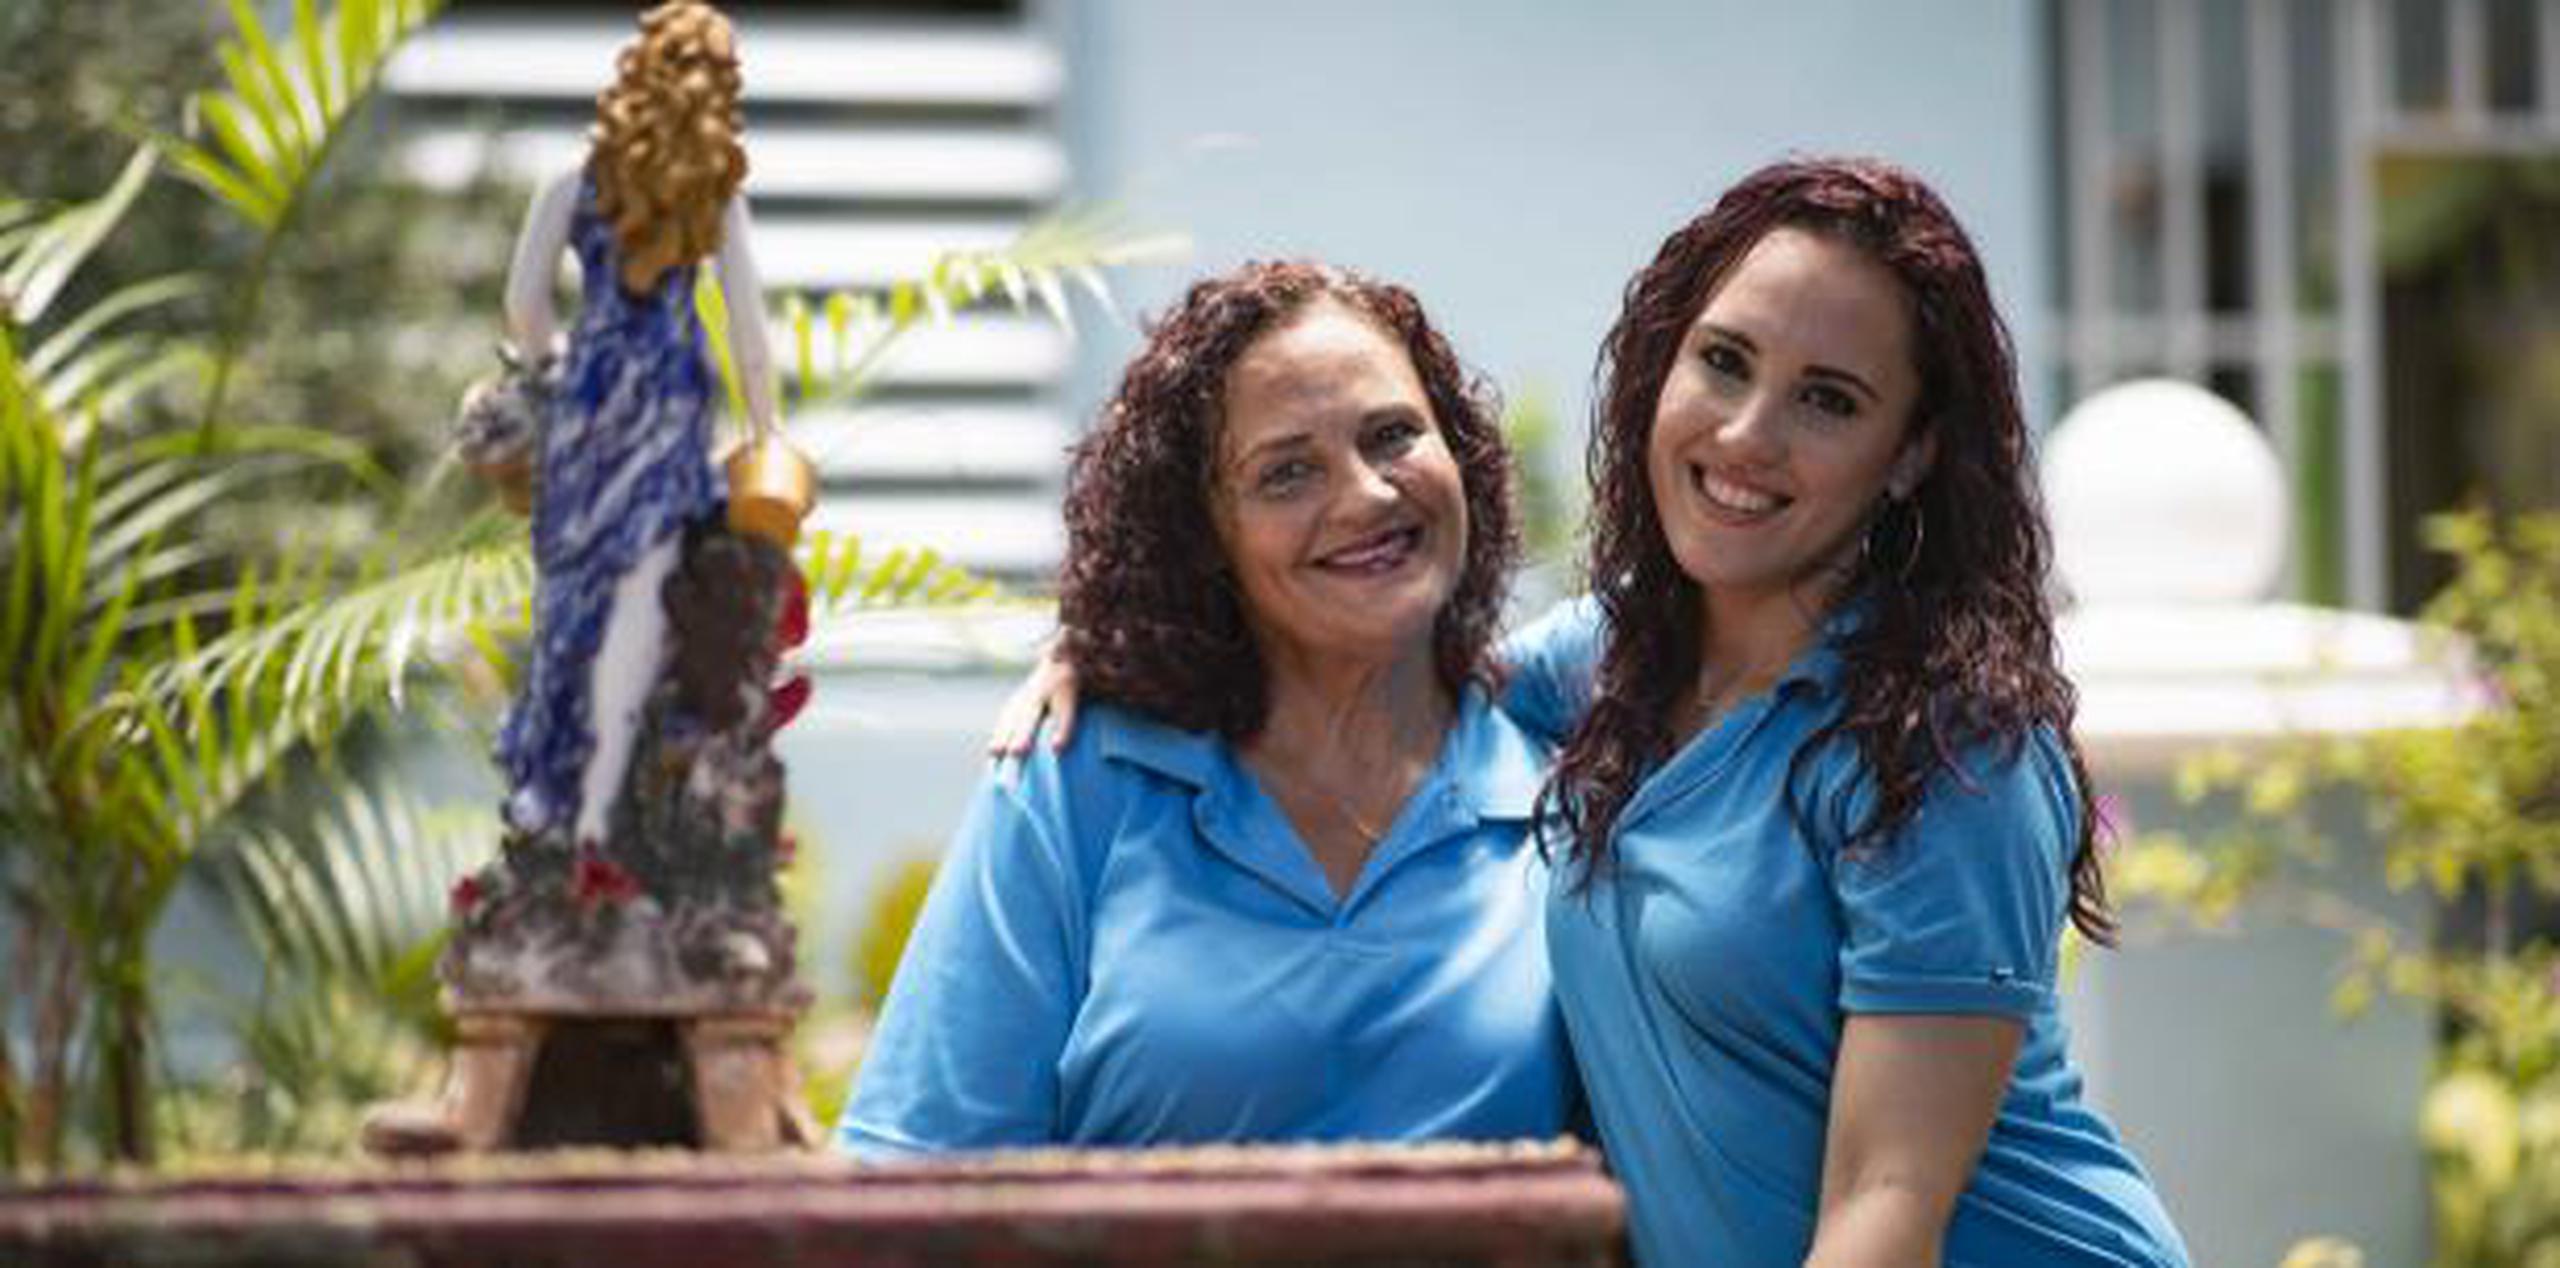 Jeantette y Coralis lograron retomar su relación de madre e hija gracias a La Providencia.  (tonito.zayas@gfrmedia.com)